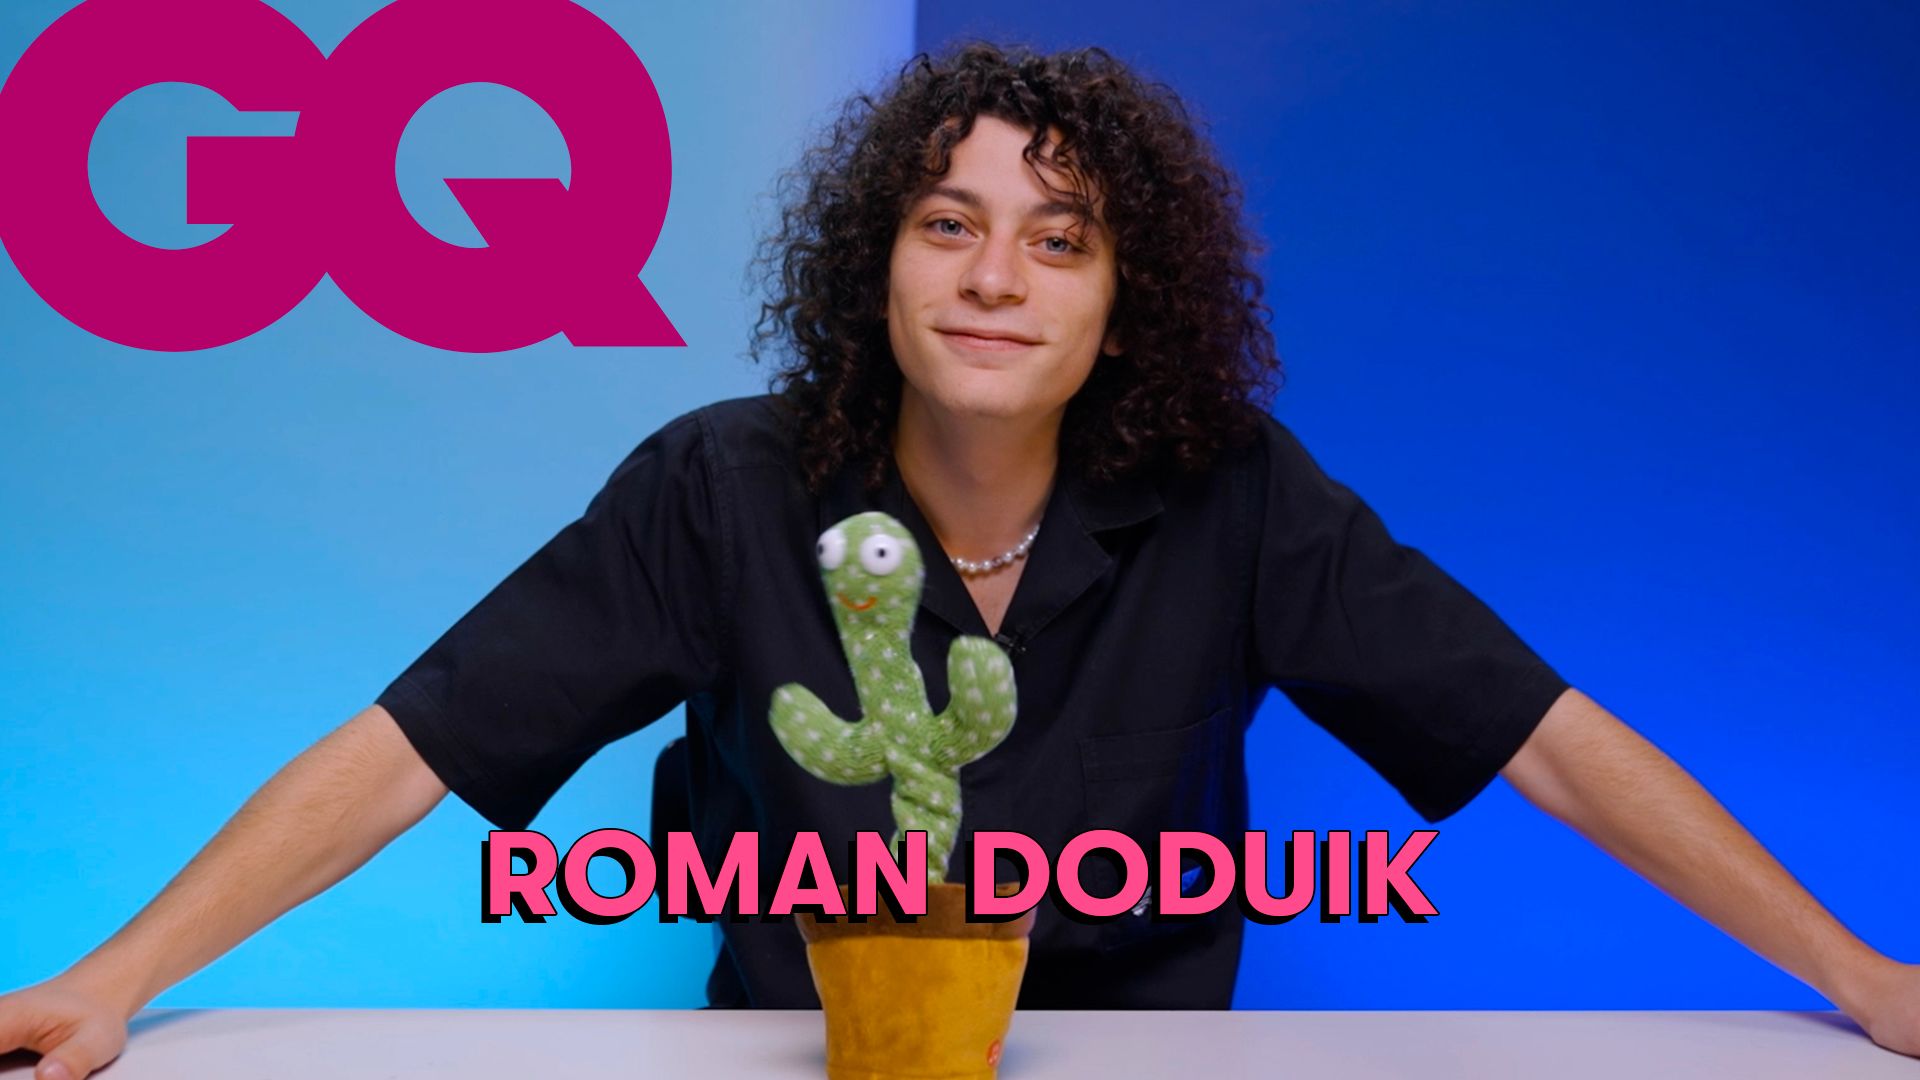 Voir Les 10 Essentiels de Roman Doduik (ukulélé, micro et cactus